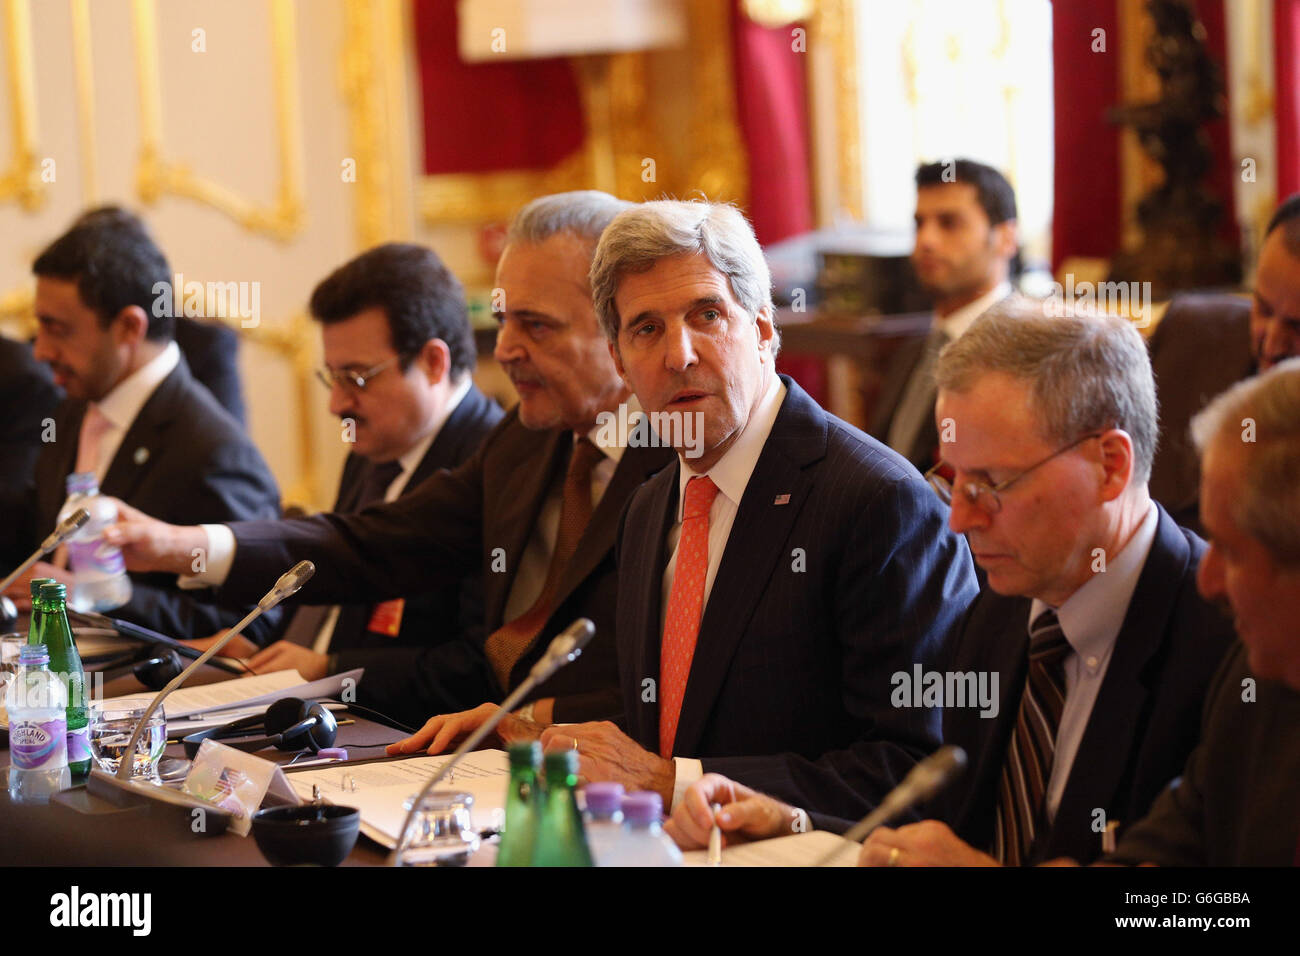 Le Secrétaire D'État AMÉRICAIN John Kerry (C) assiste à une réunion organisée par le Secrétaire aux Affaires étrangères William Hague du 'London 11', du Groupe central des amis de la Syrie, à Lancaster House, dans le centre de Londres, en vue de mettre fin à la guerre civile brutale en Syrie. Banque D'Images